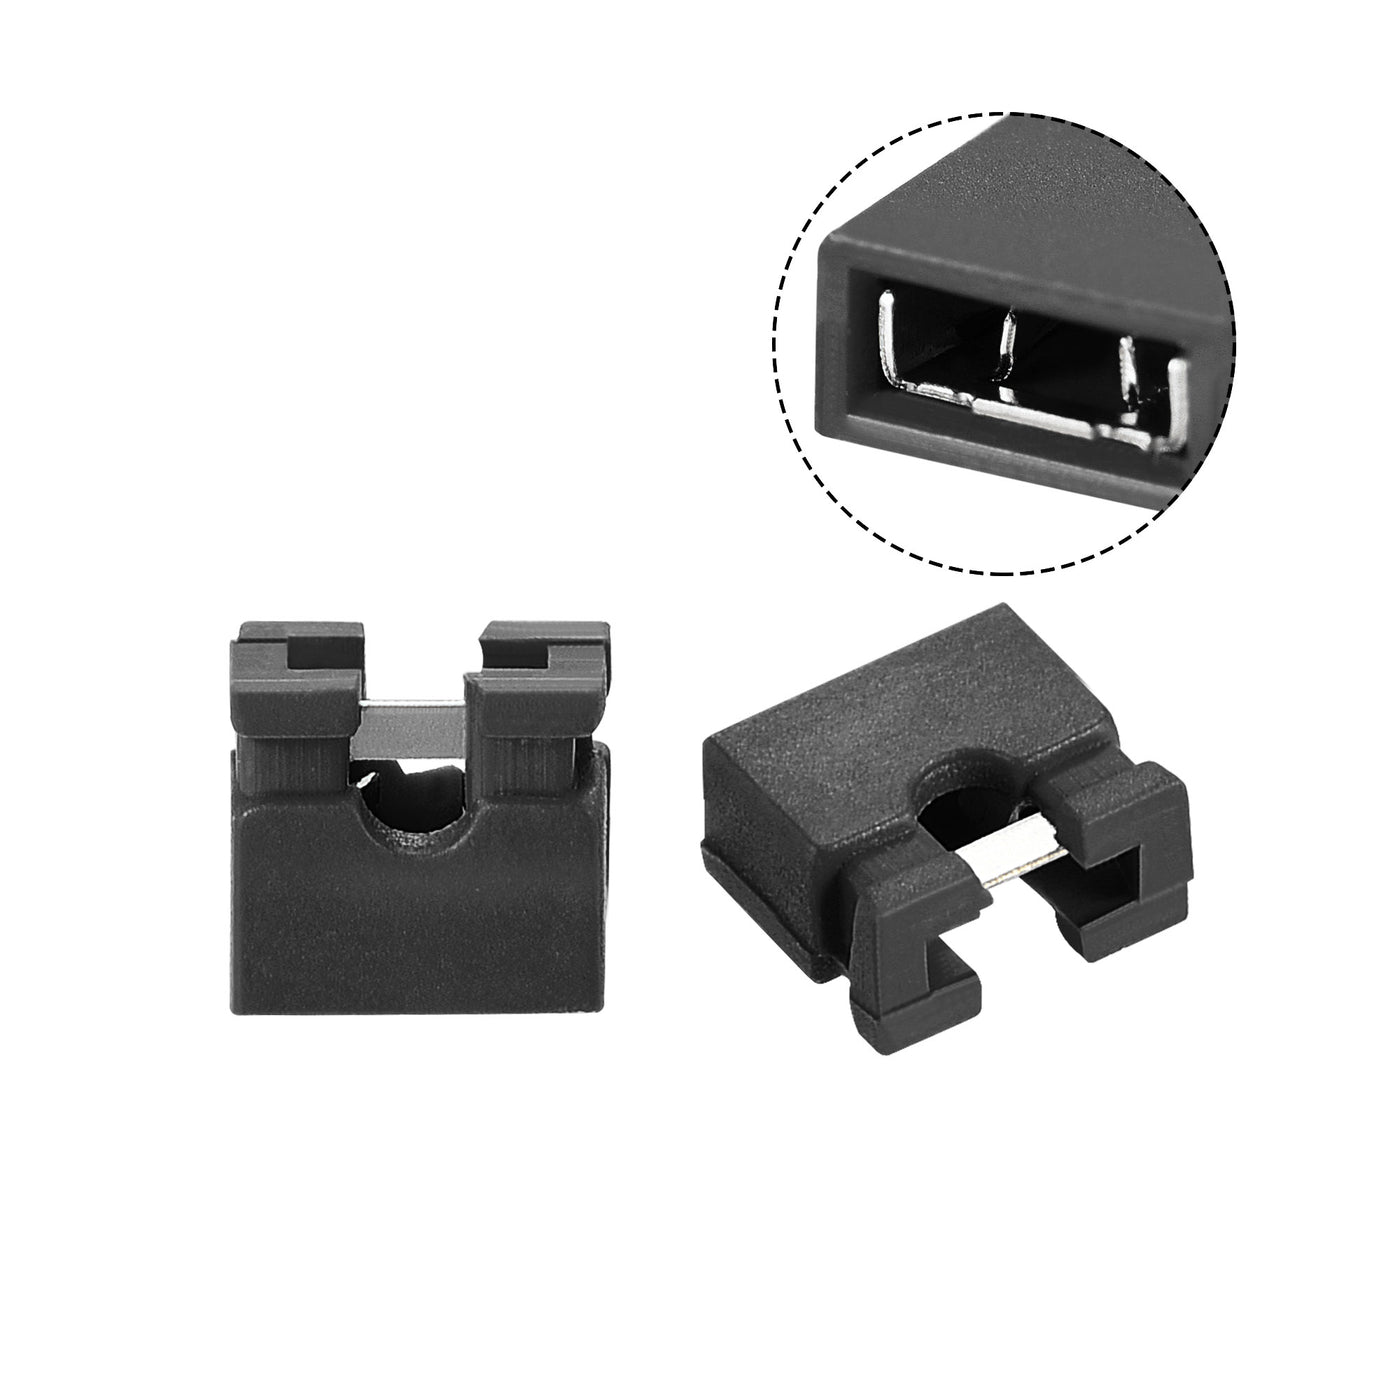 uxcell Uxcell 50pcs 2mm Standard Pin Header Jumper Cap Short Circuit Connection Cap Mini Micro Jumper Bridge Plug Black